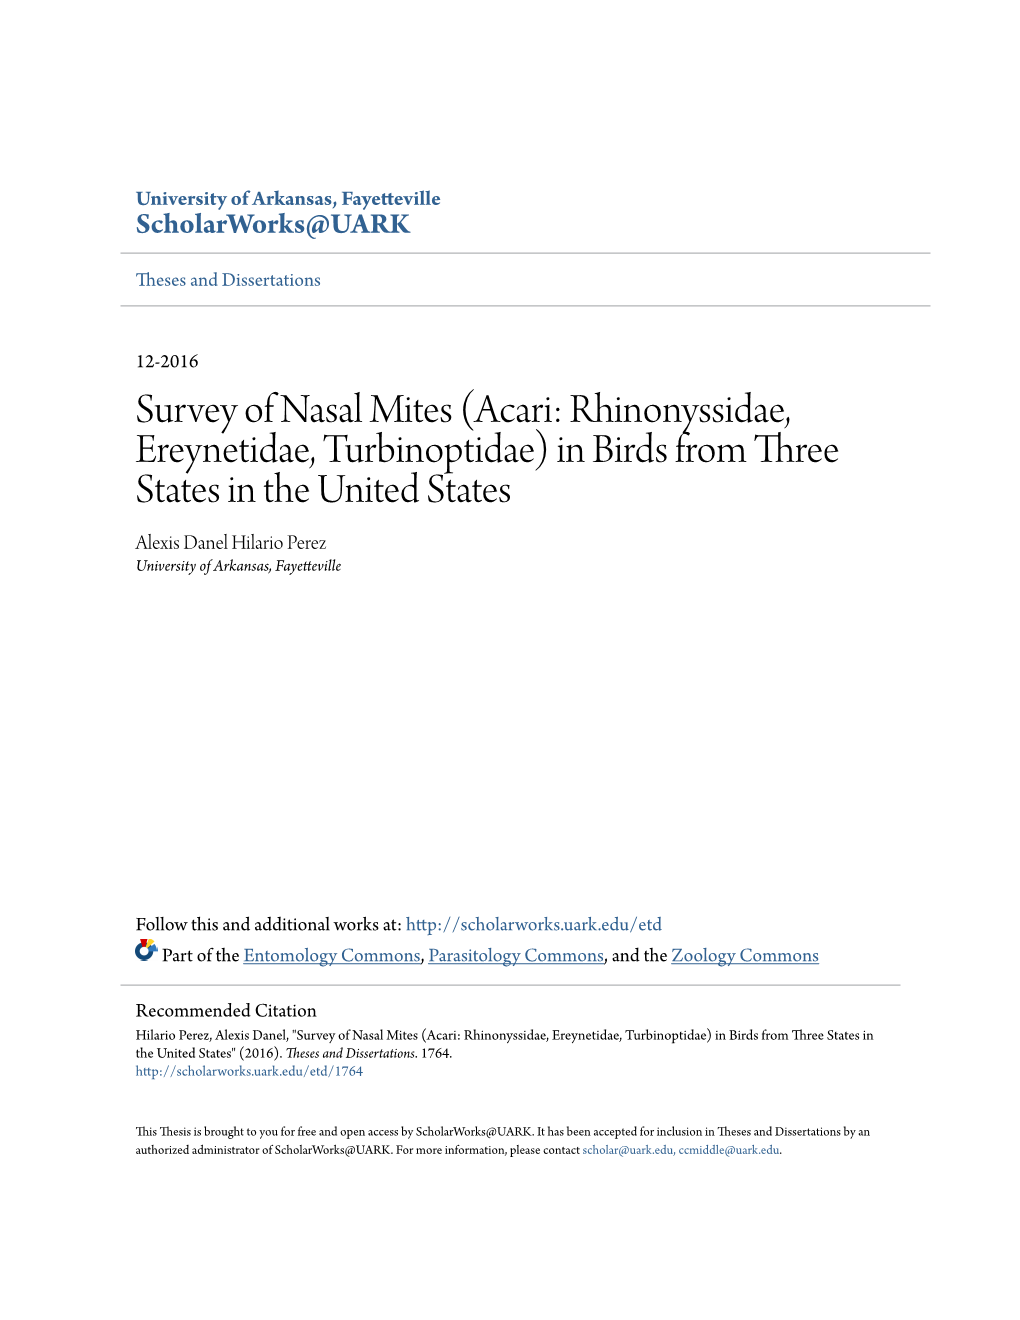 Survey of Nasal Mites